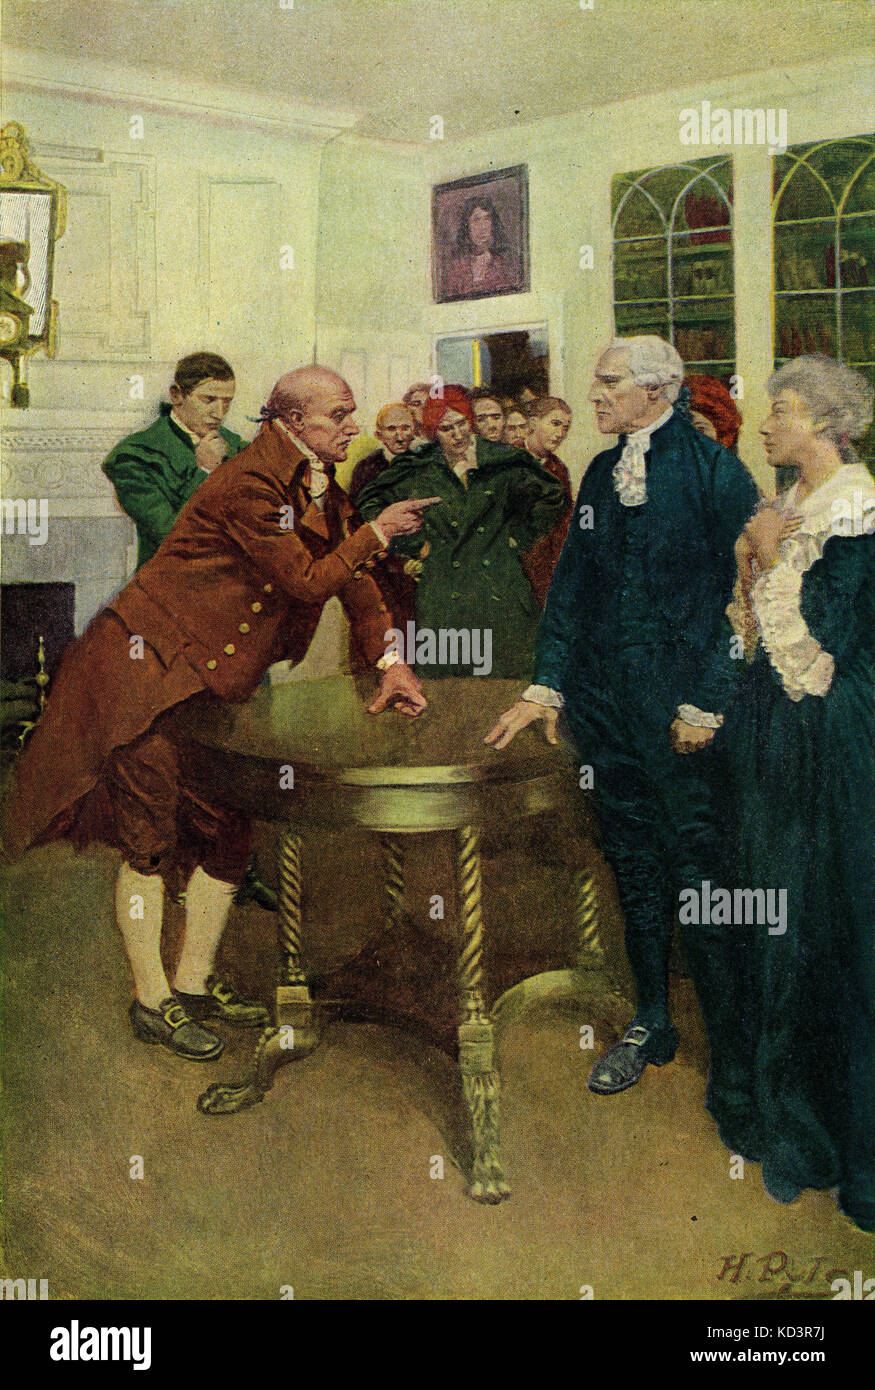 Comité des patriotes un ultimatum à un conseiller du roi, Boston, pour protester contre le Stamp Act de 1765, la Révolution américaine. Illustration de Howard Pyle, 1908 Banque D'Images